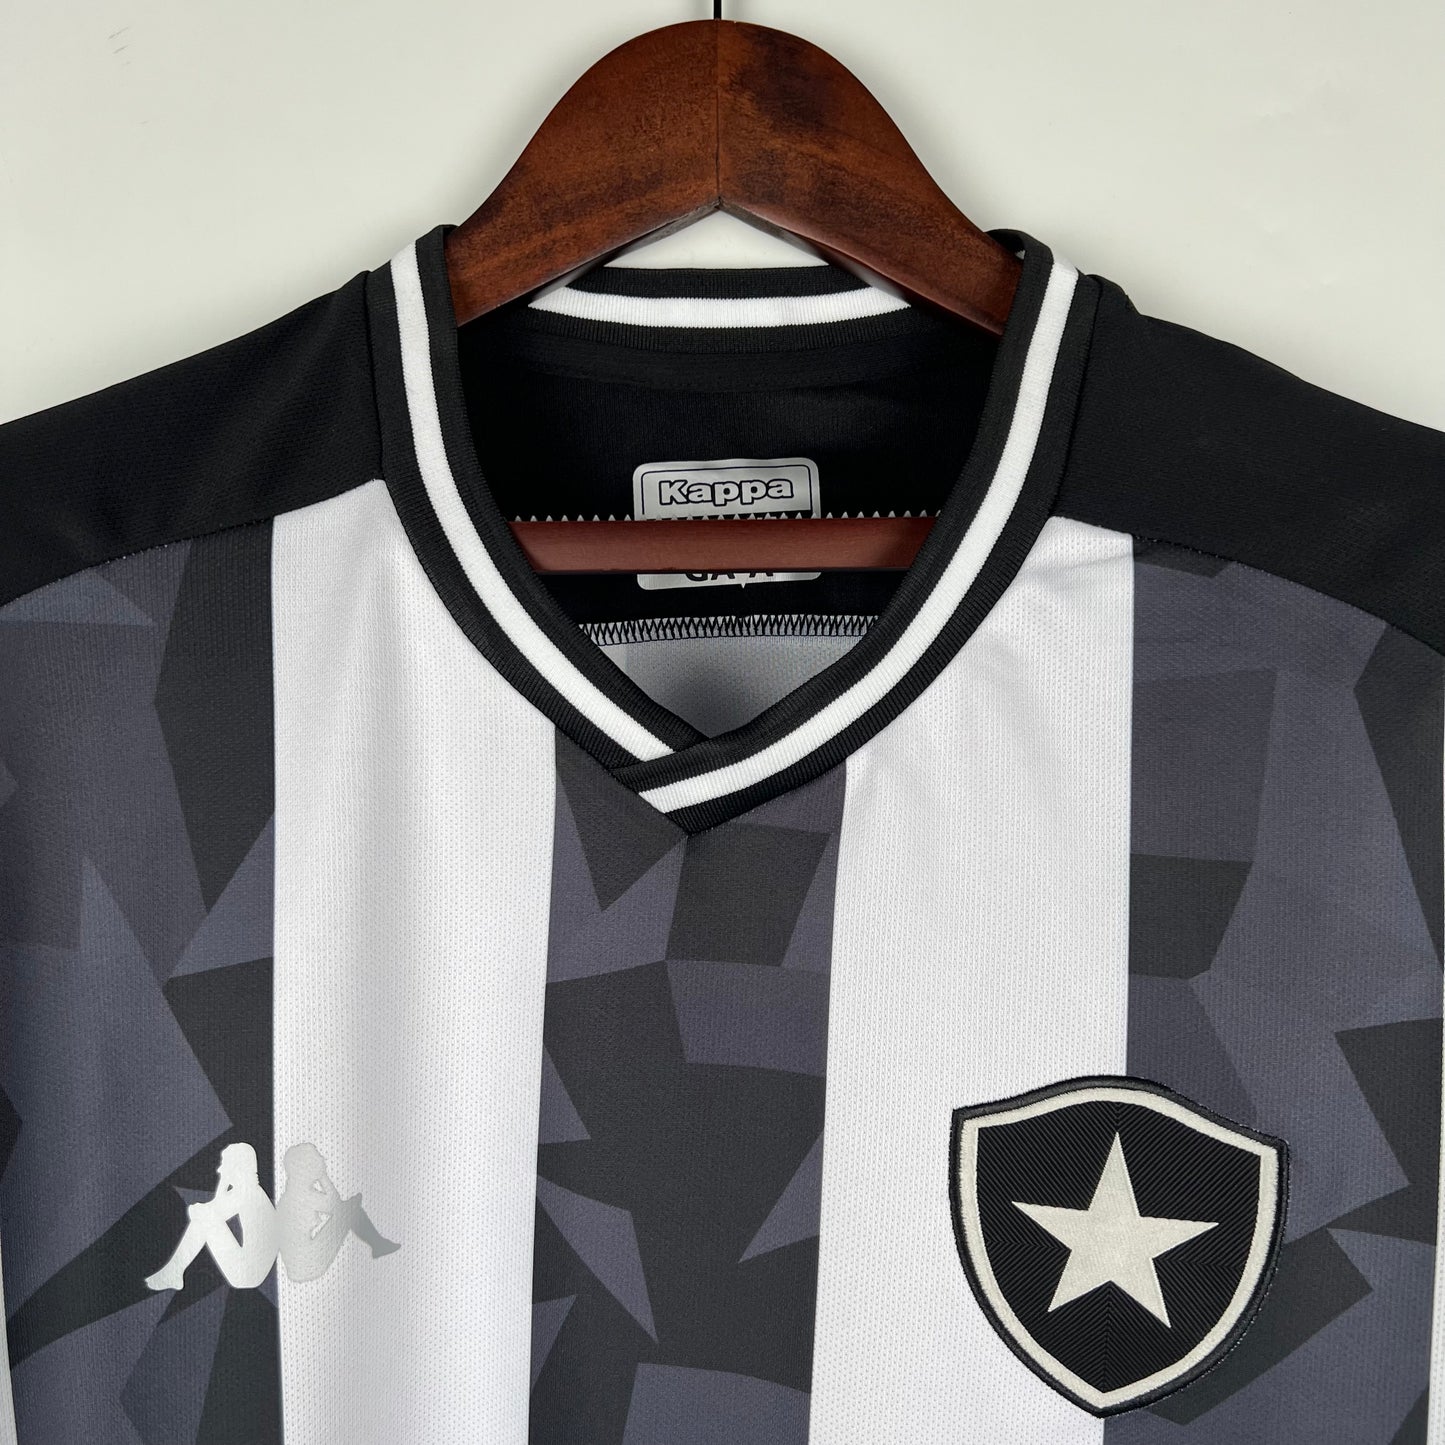 Vintage Botafogo 19/20 Home Kit